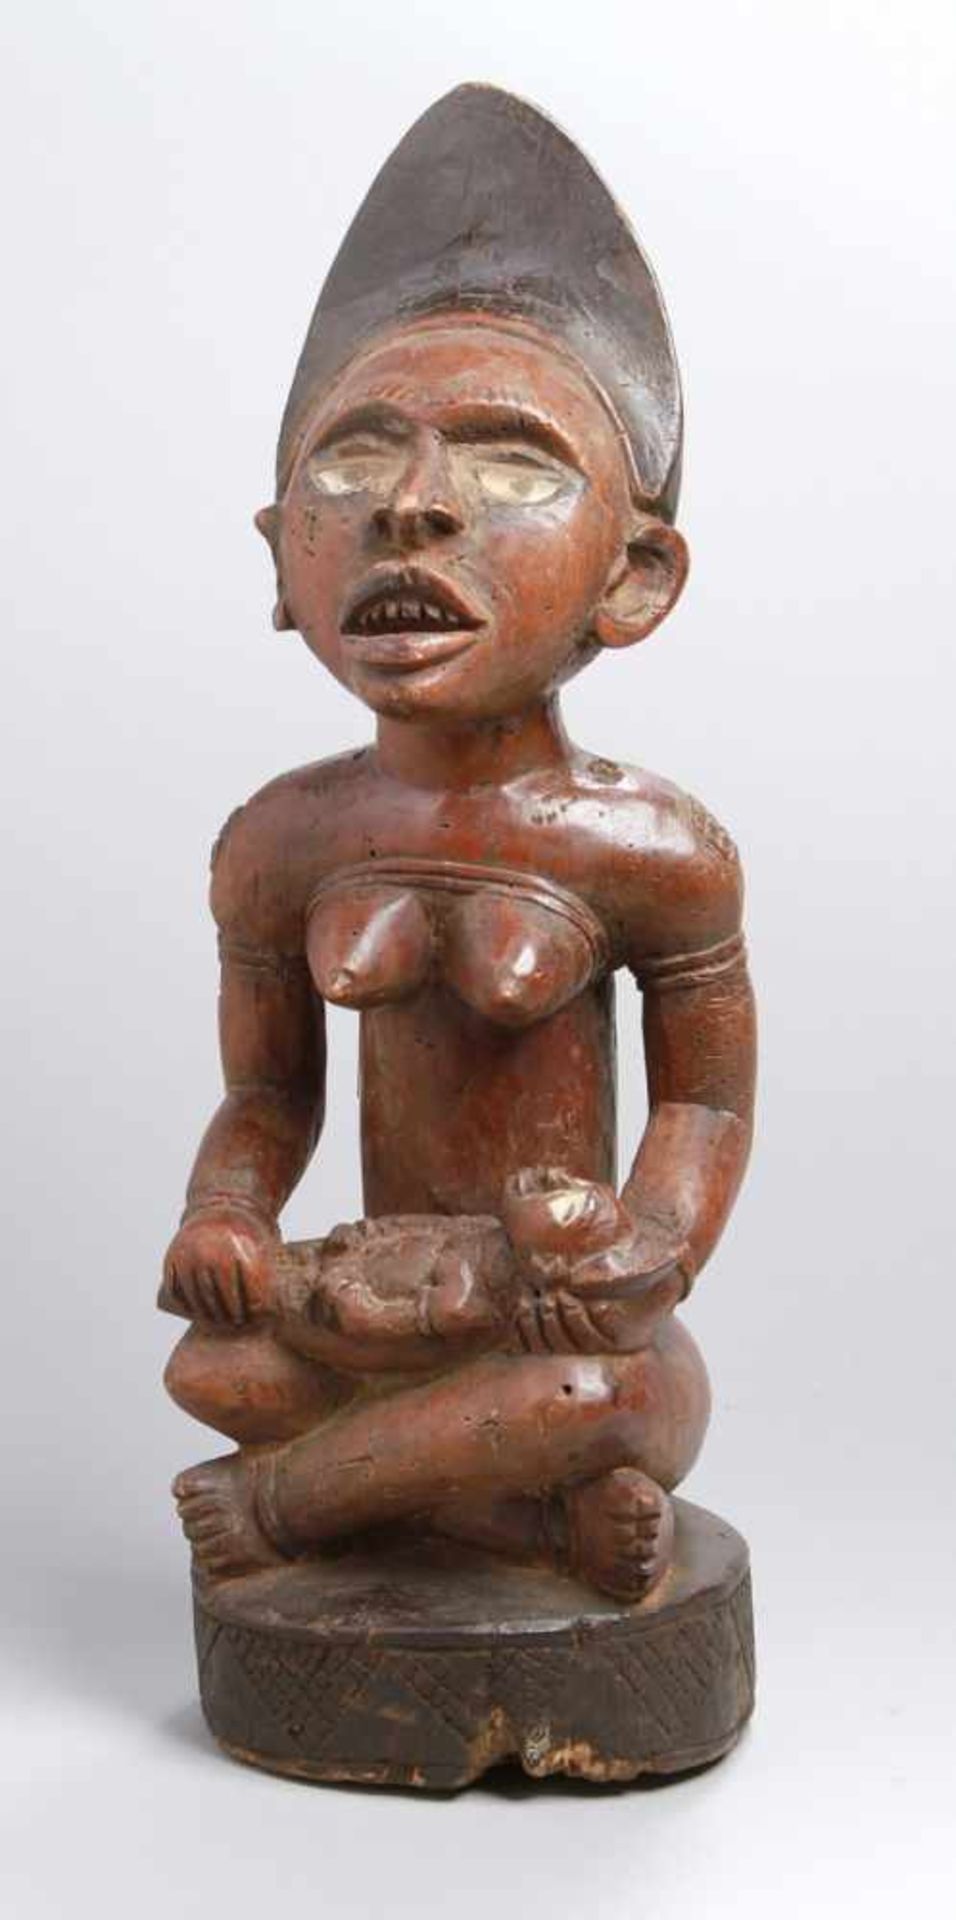 Mutter-Figur, Yombe, Kongo, auf Ovalsockel im Schneidersitz hockende, plastische,weibliche